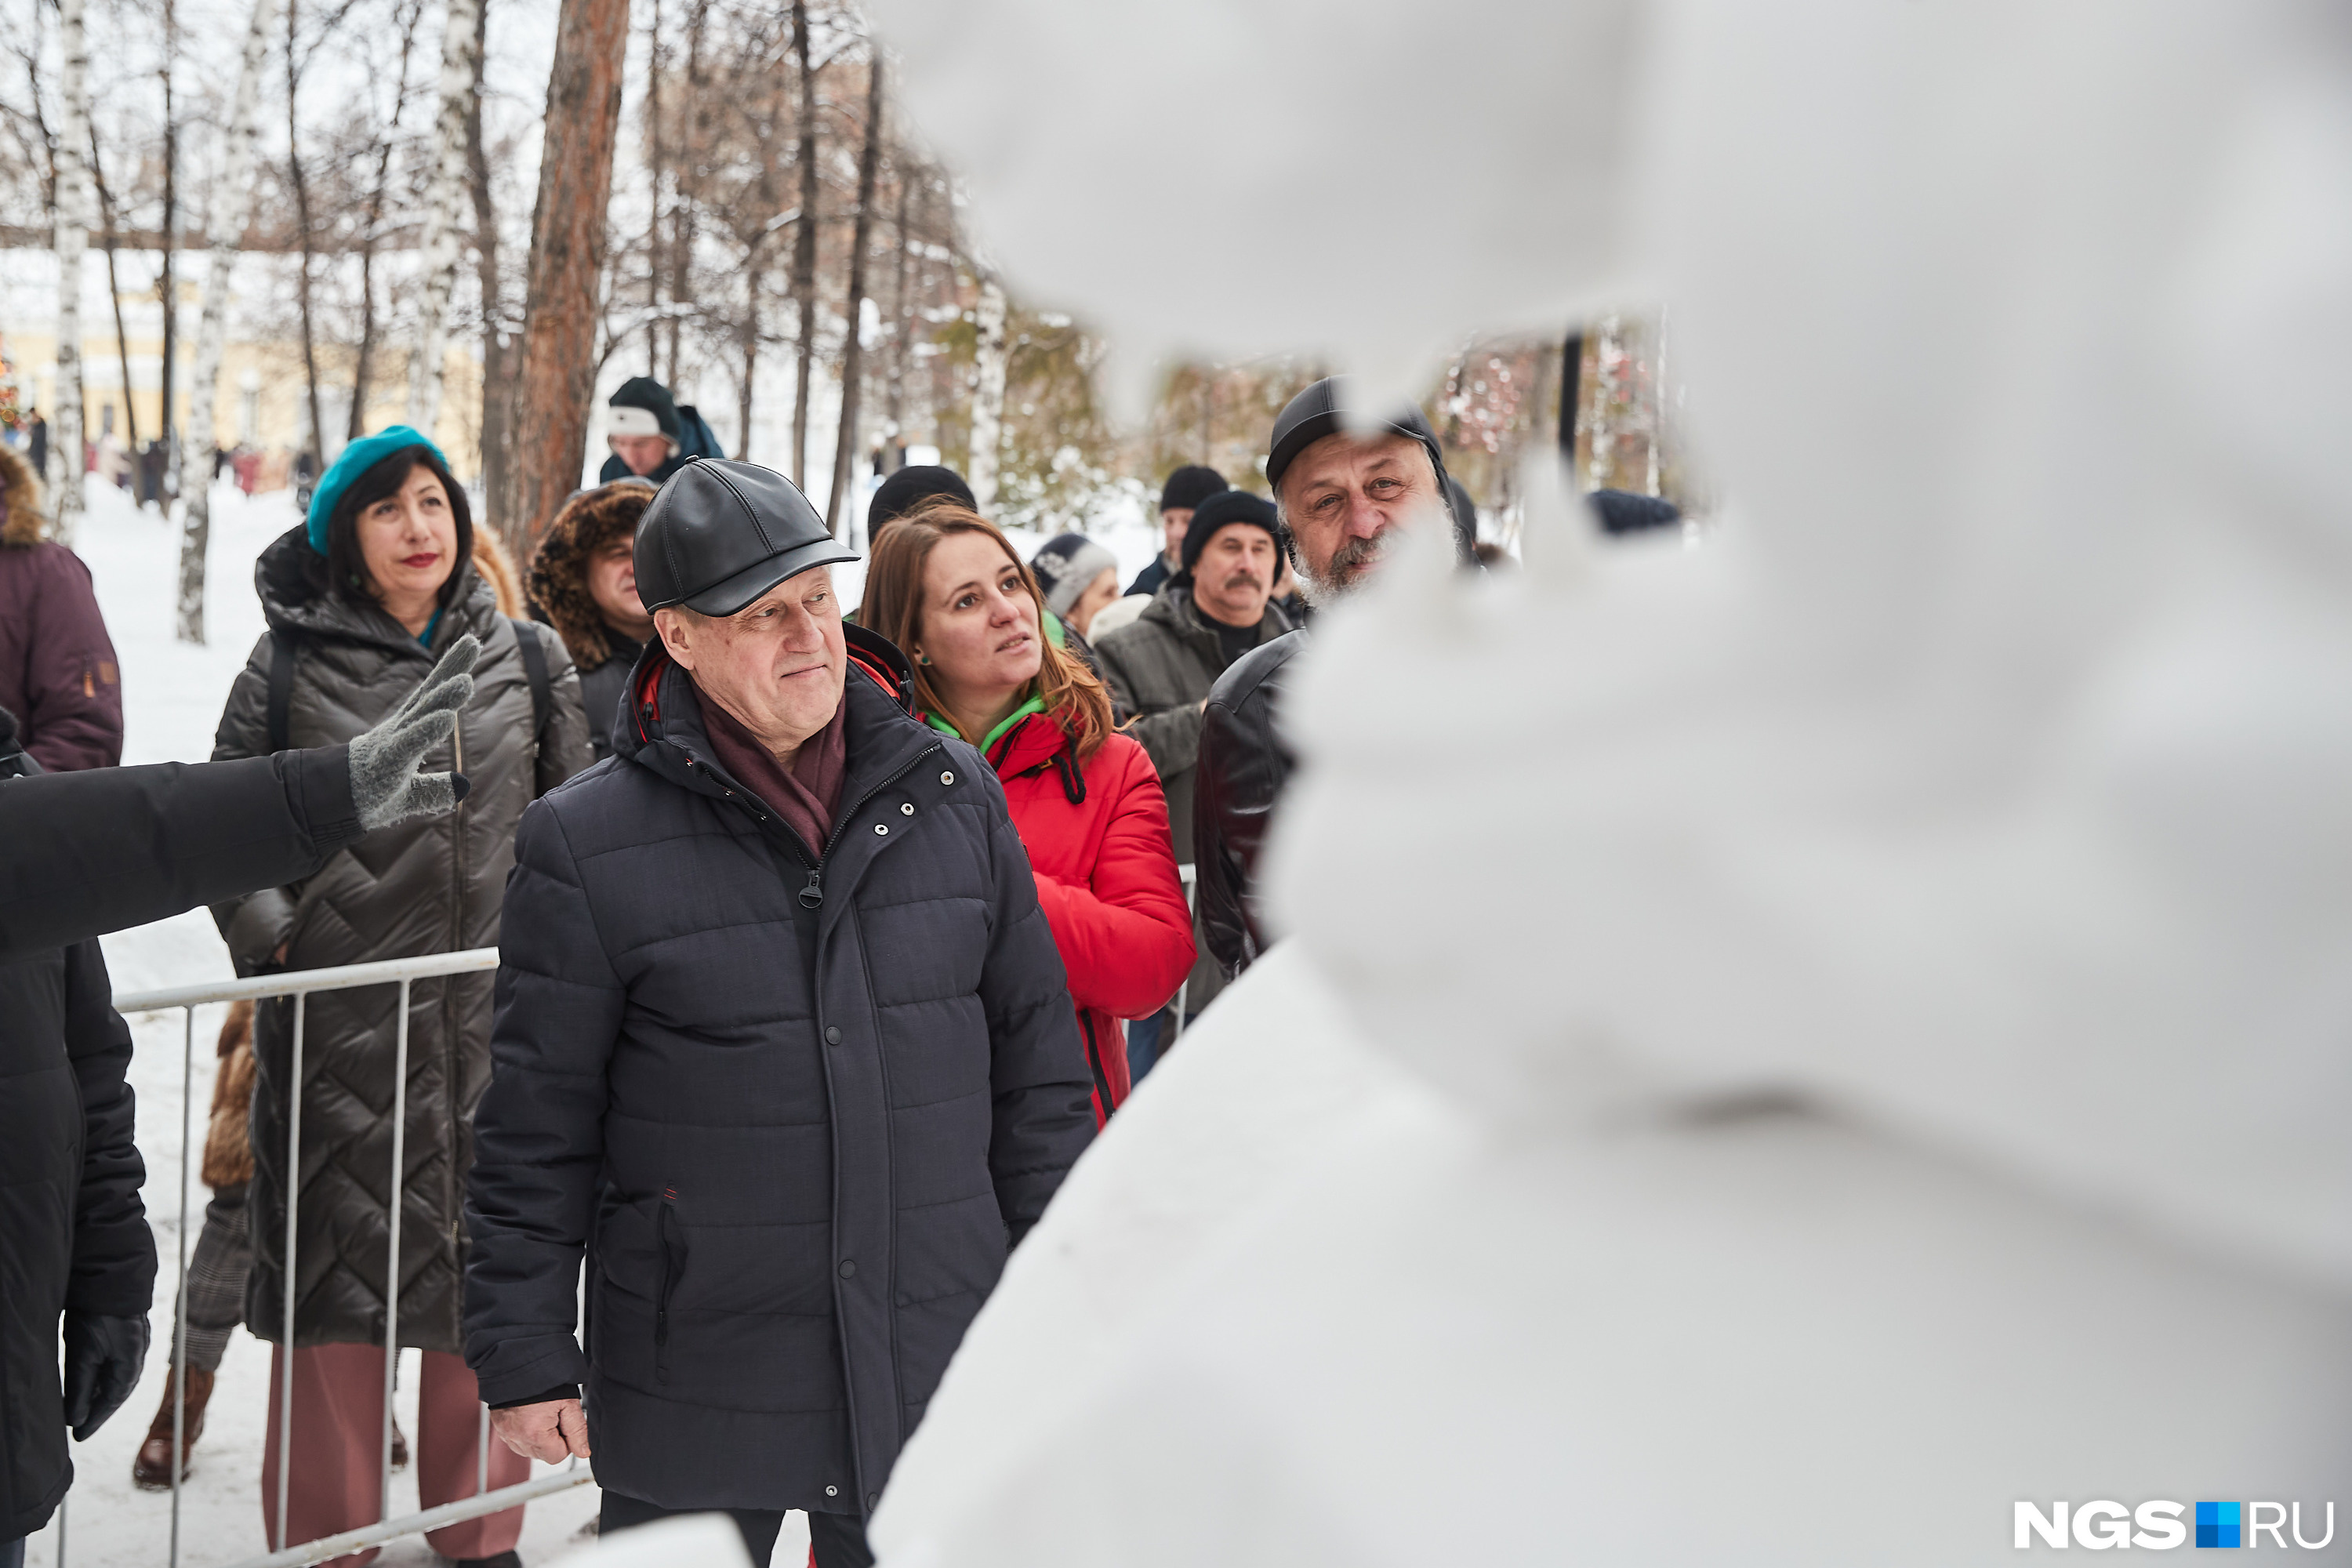 Мэр осмотрел Обскую тропу: как прошел конкурс снежных скульптур в Новосибирске — 10 кадров из парка